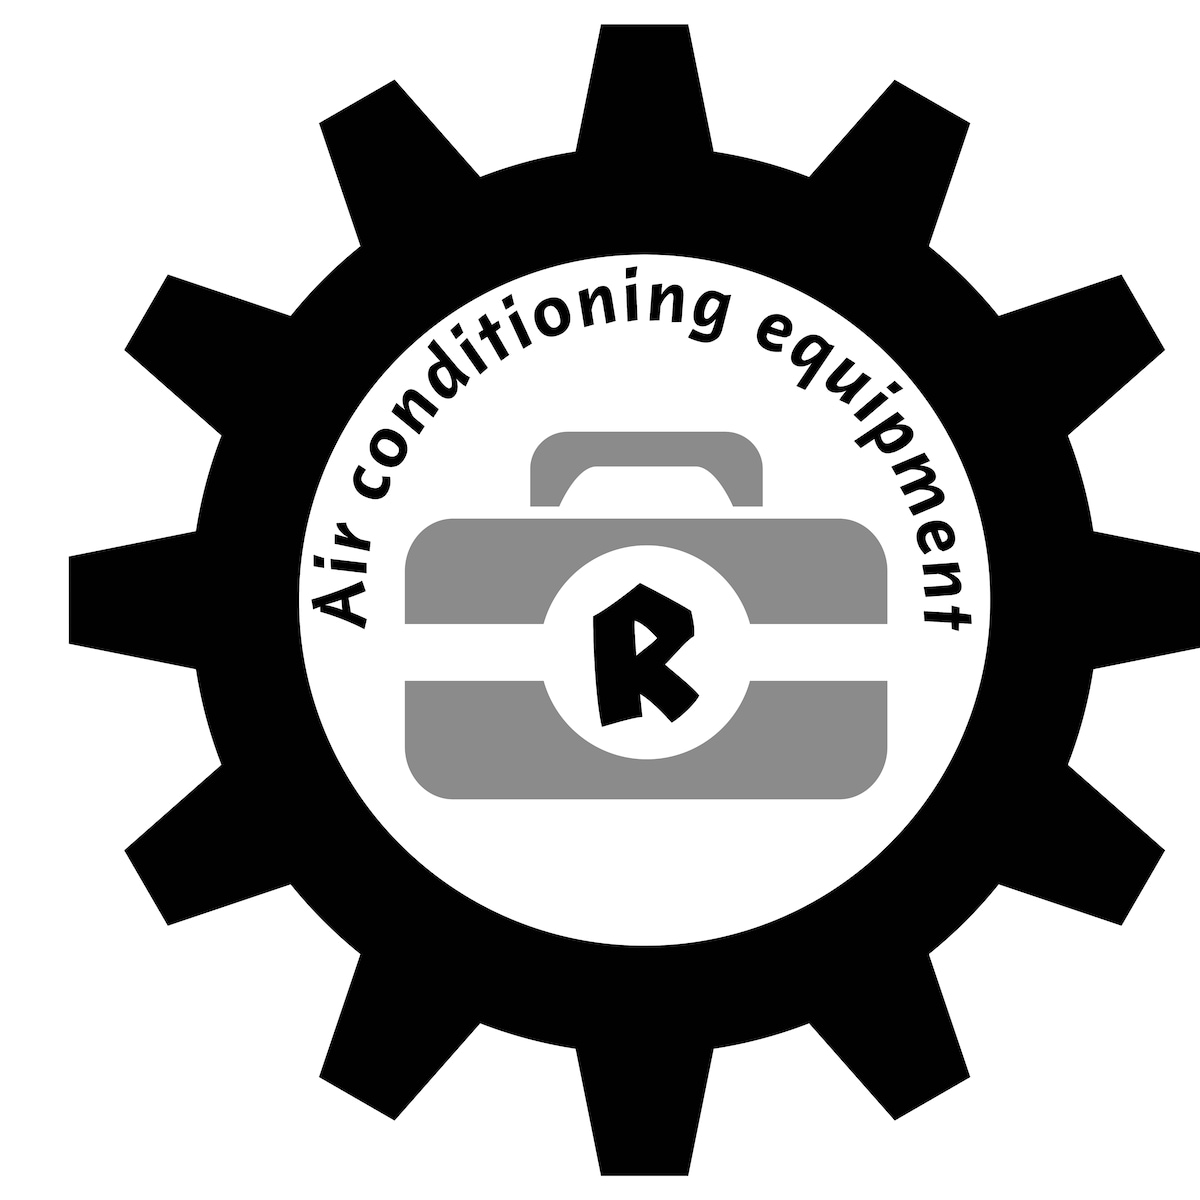 株式会社R(アール)空調設備様のロゴデザイン